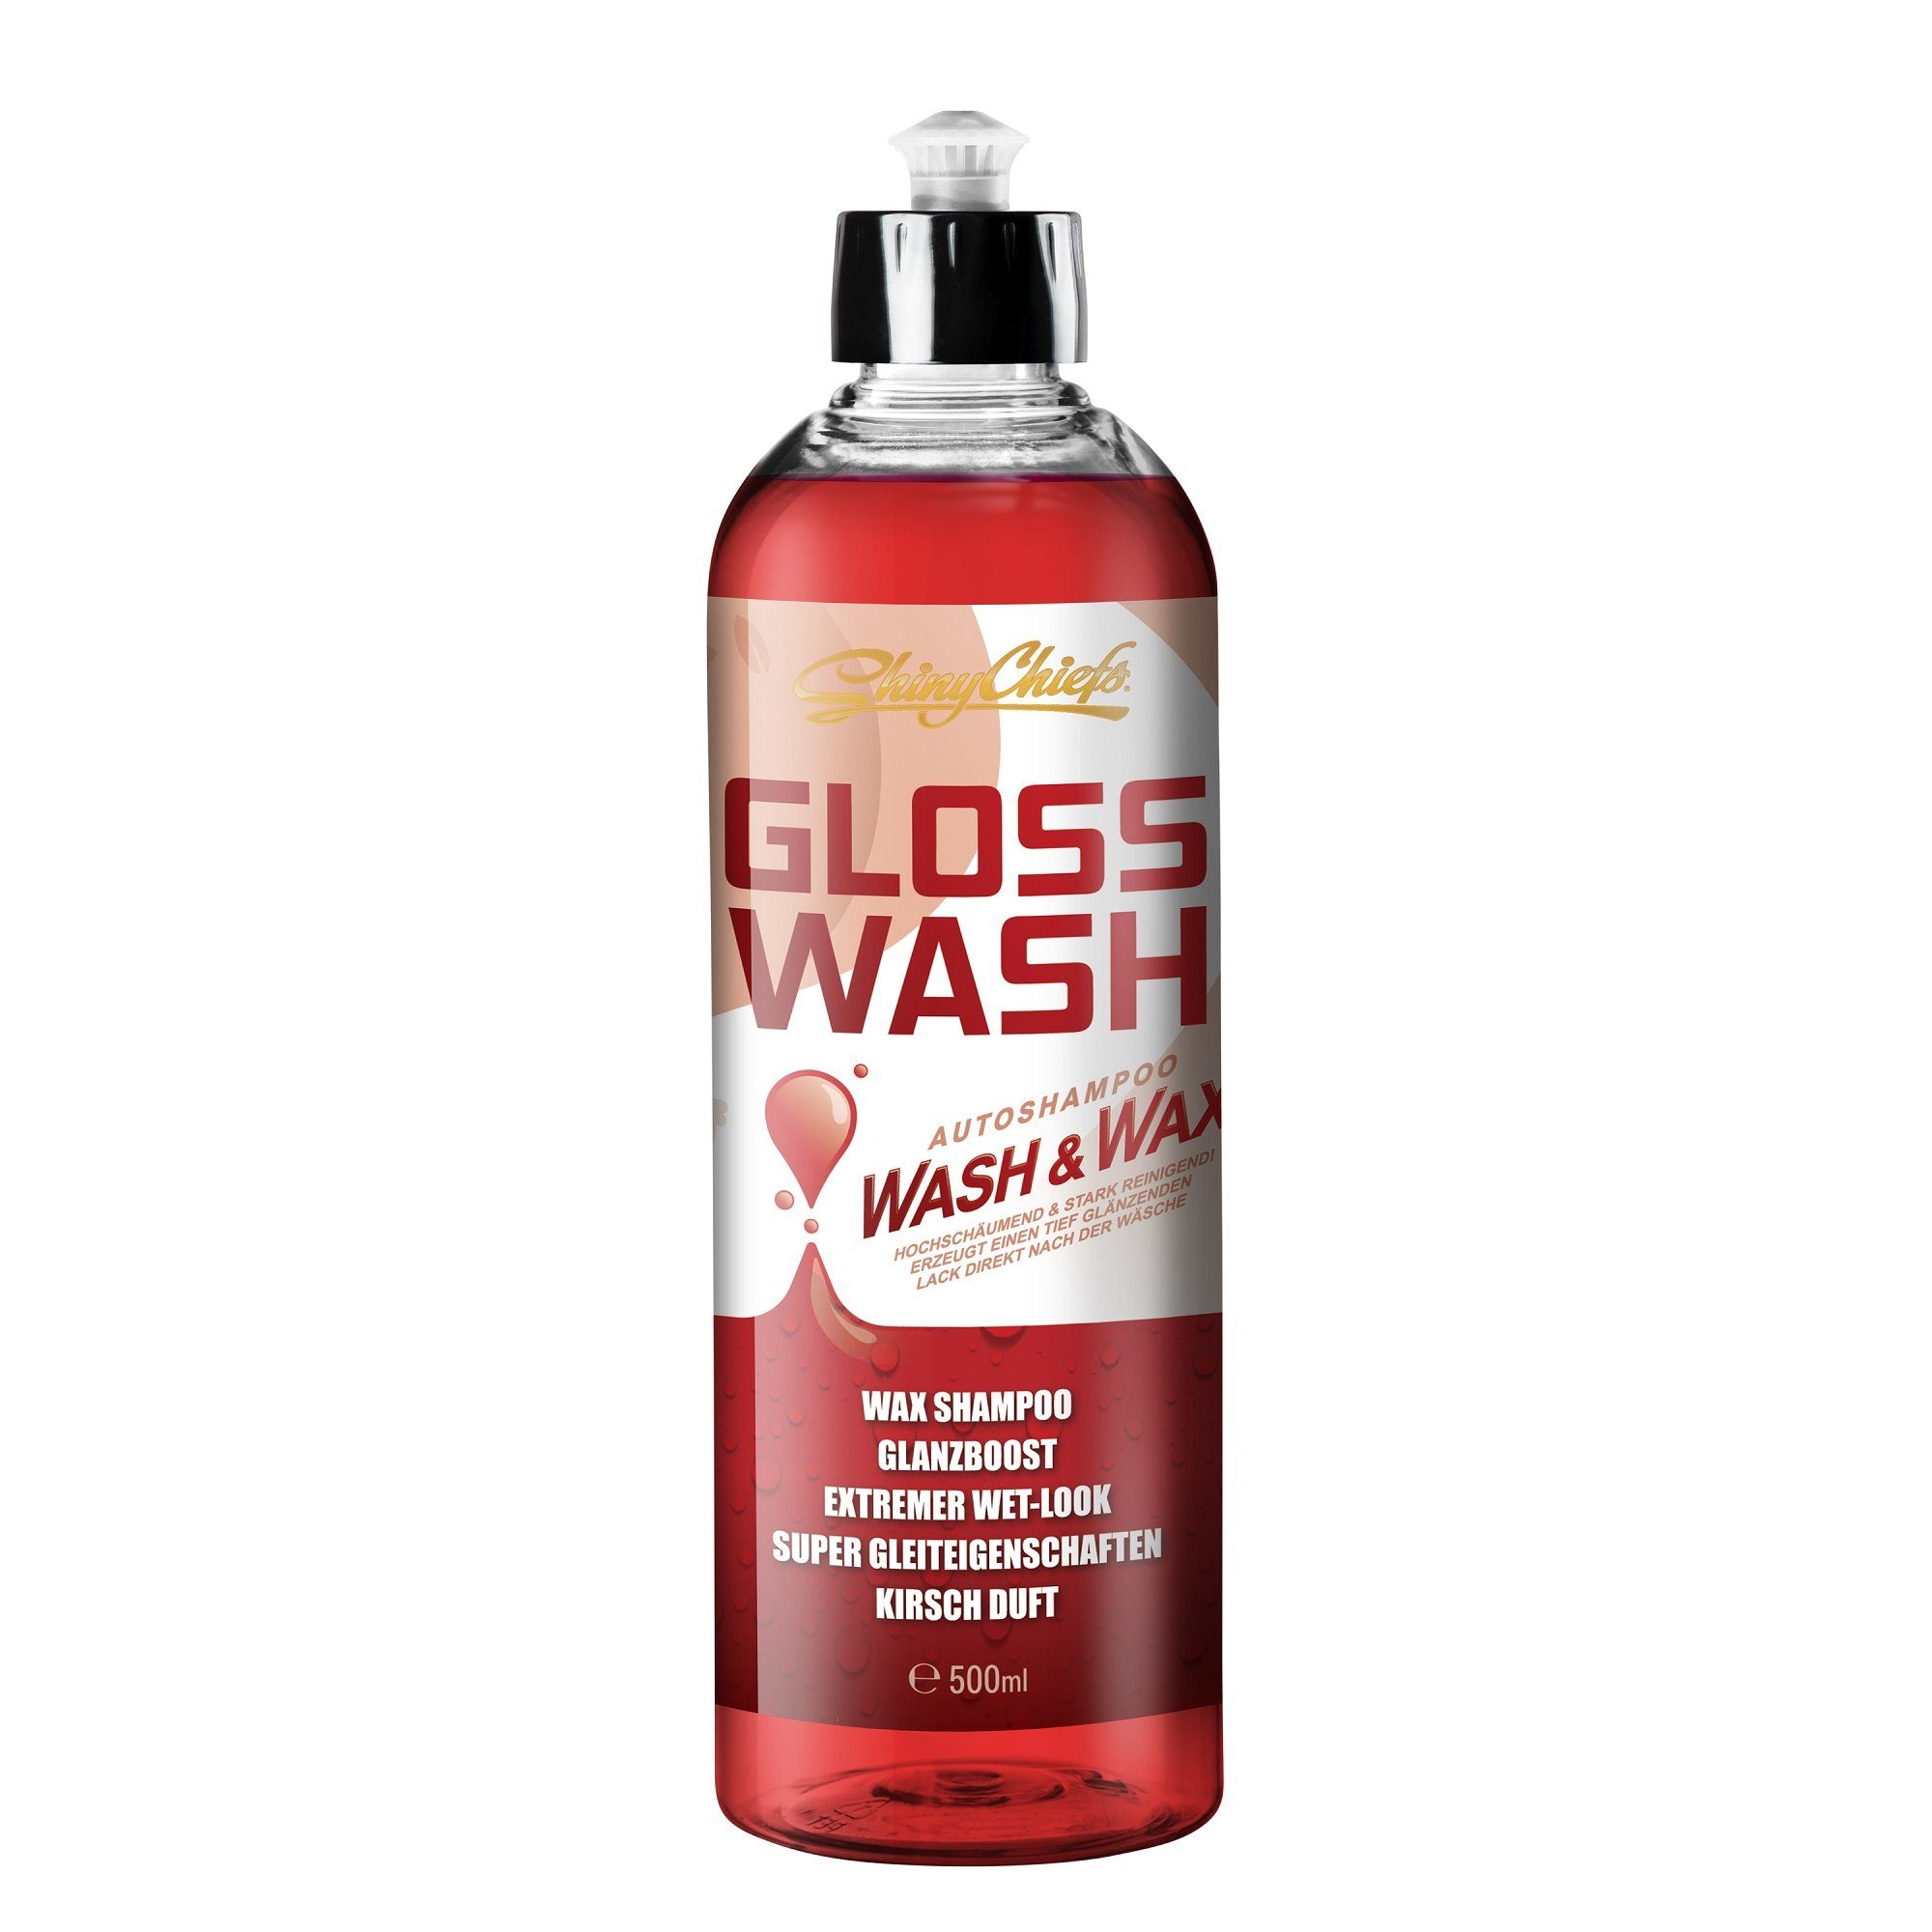 GLOSSWASH WAX 500ml (1-St) KIRSCHE ShinyChiefs - & Autoshampoo WASH mit Glanzverstärker